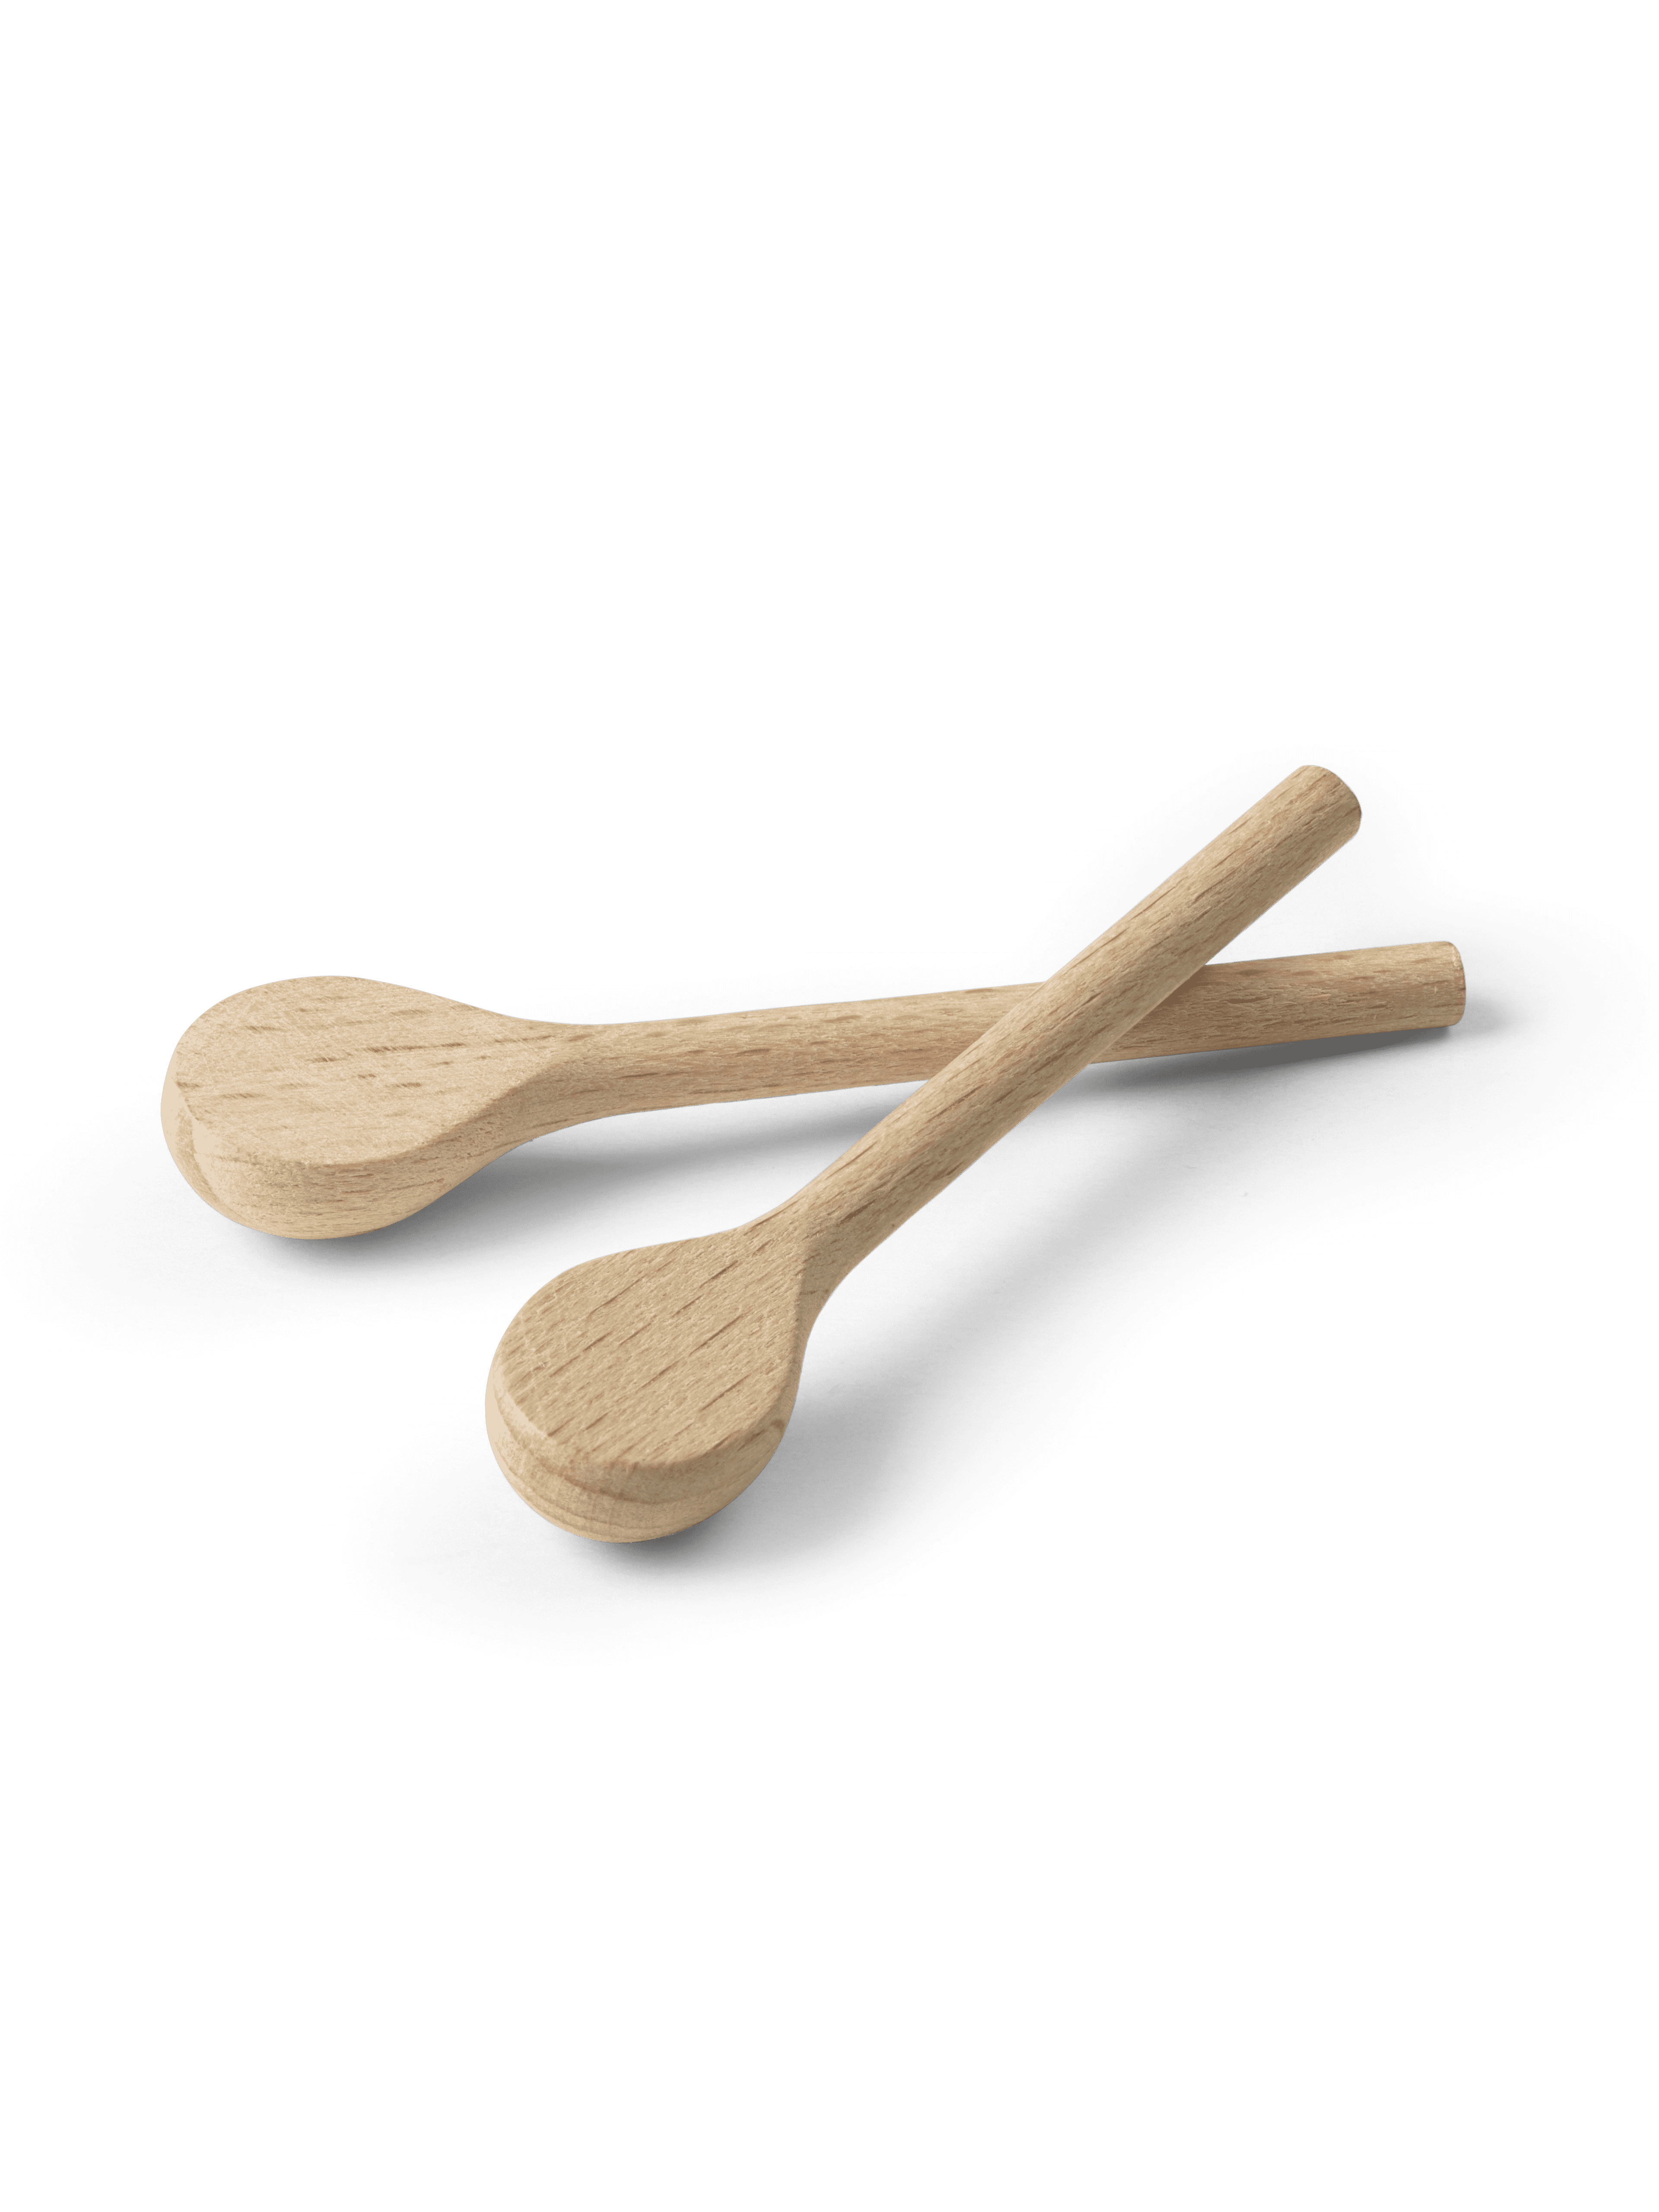 Santa Clara/Cook girl spoon (39480, 39436)